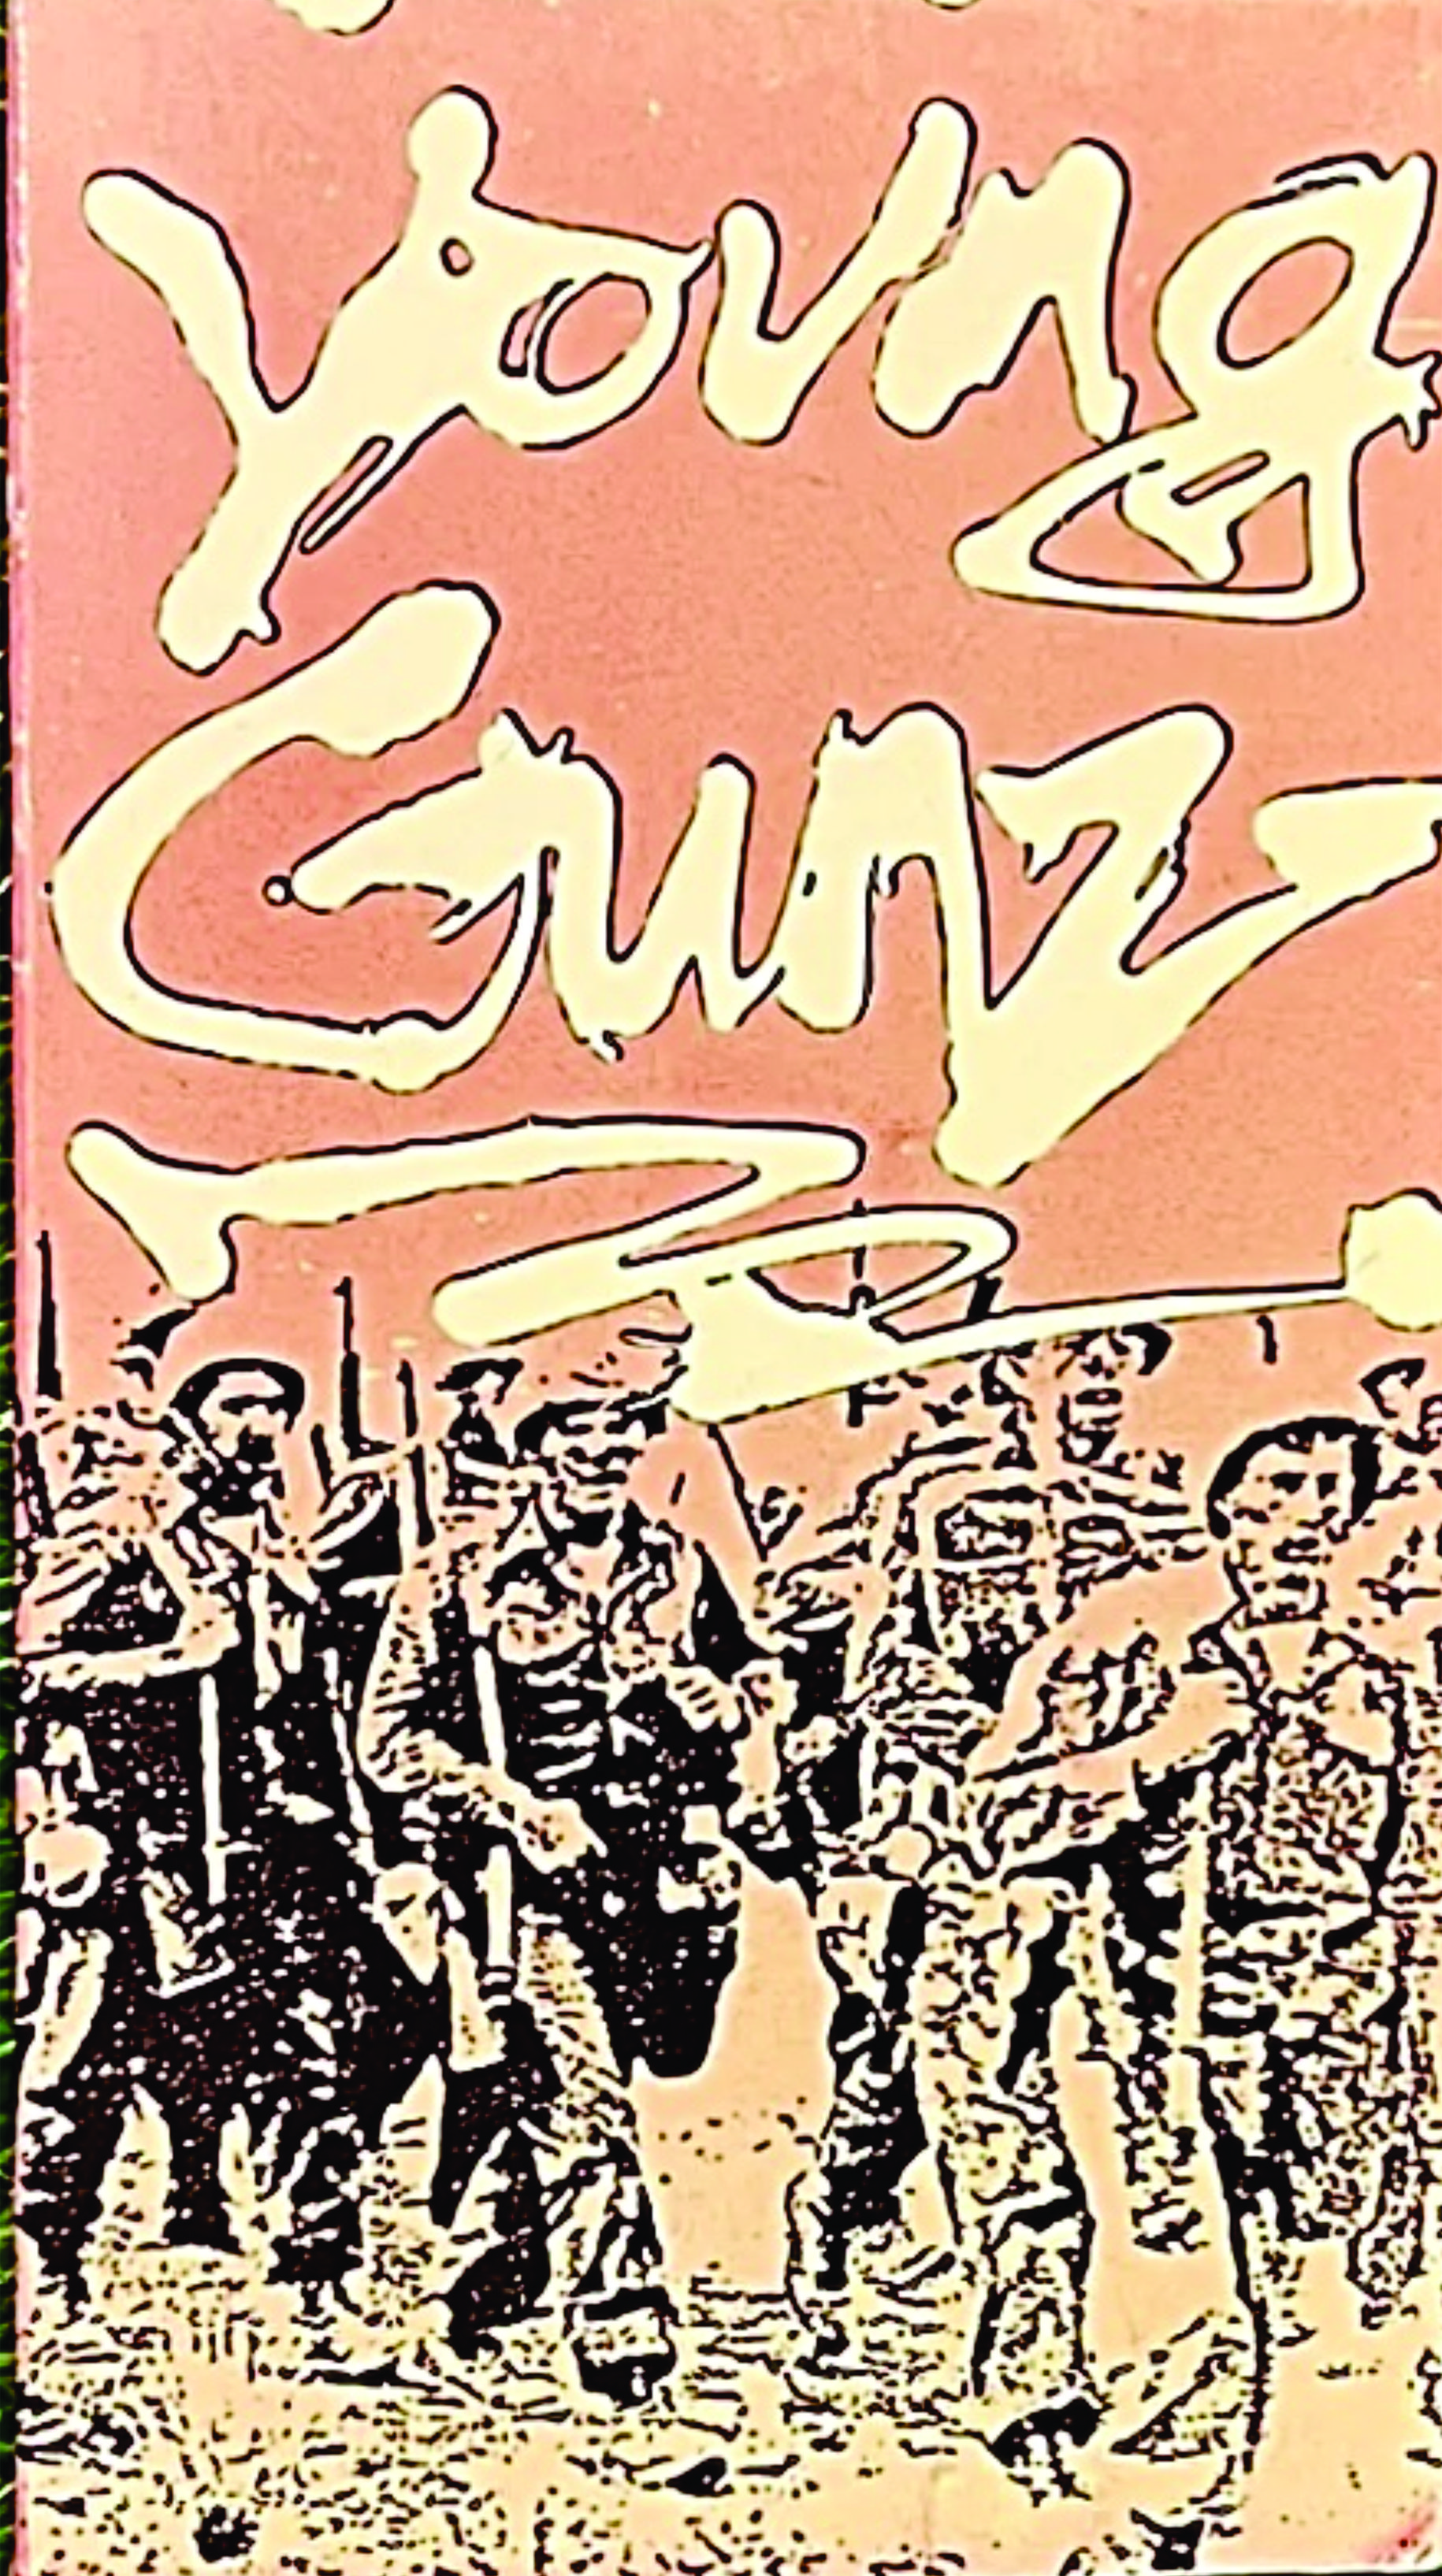 Alva - Young Gunz cover